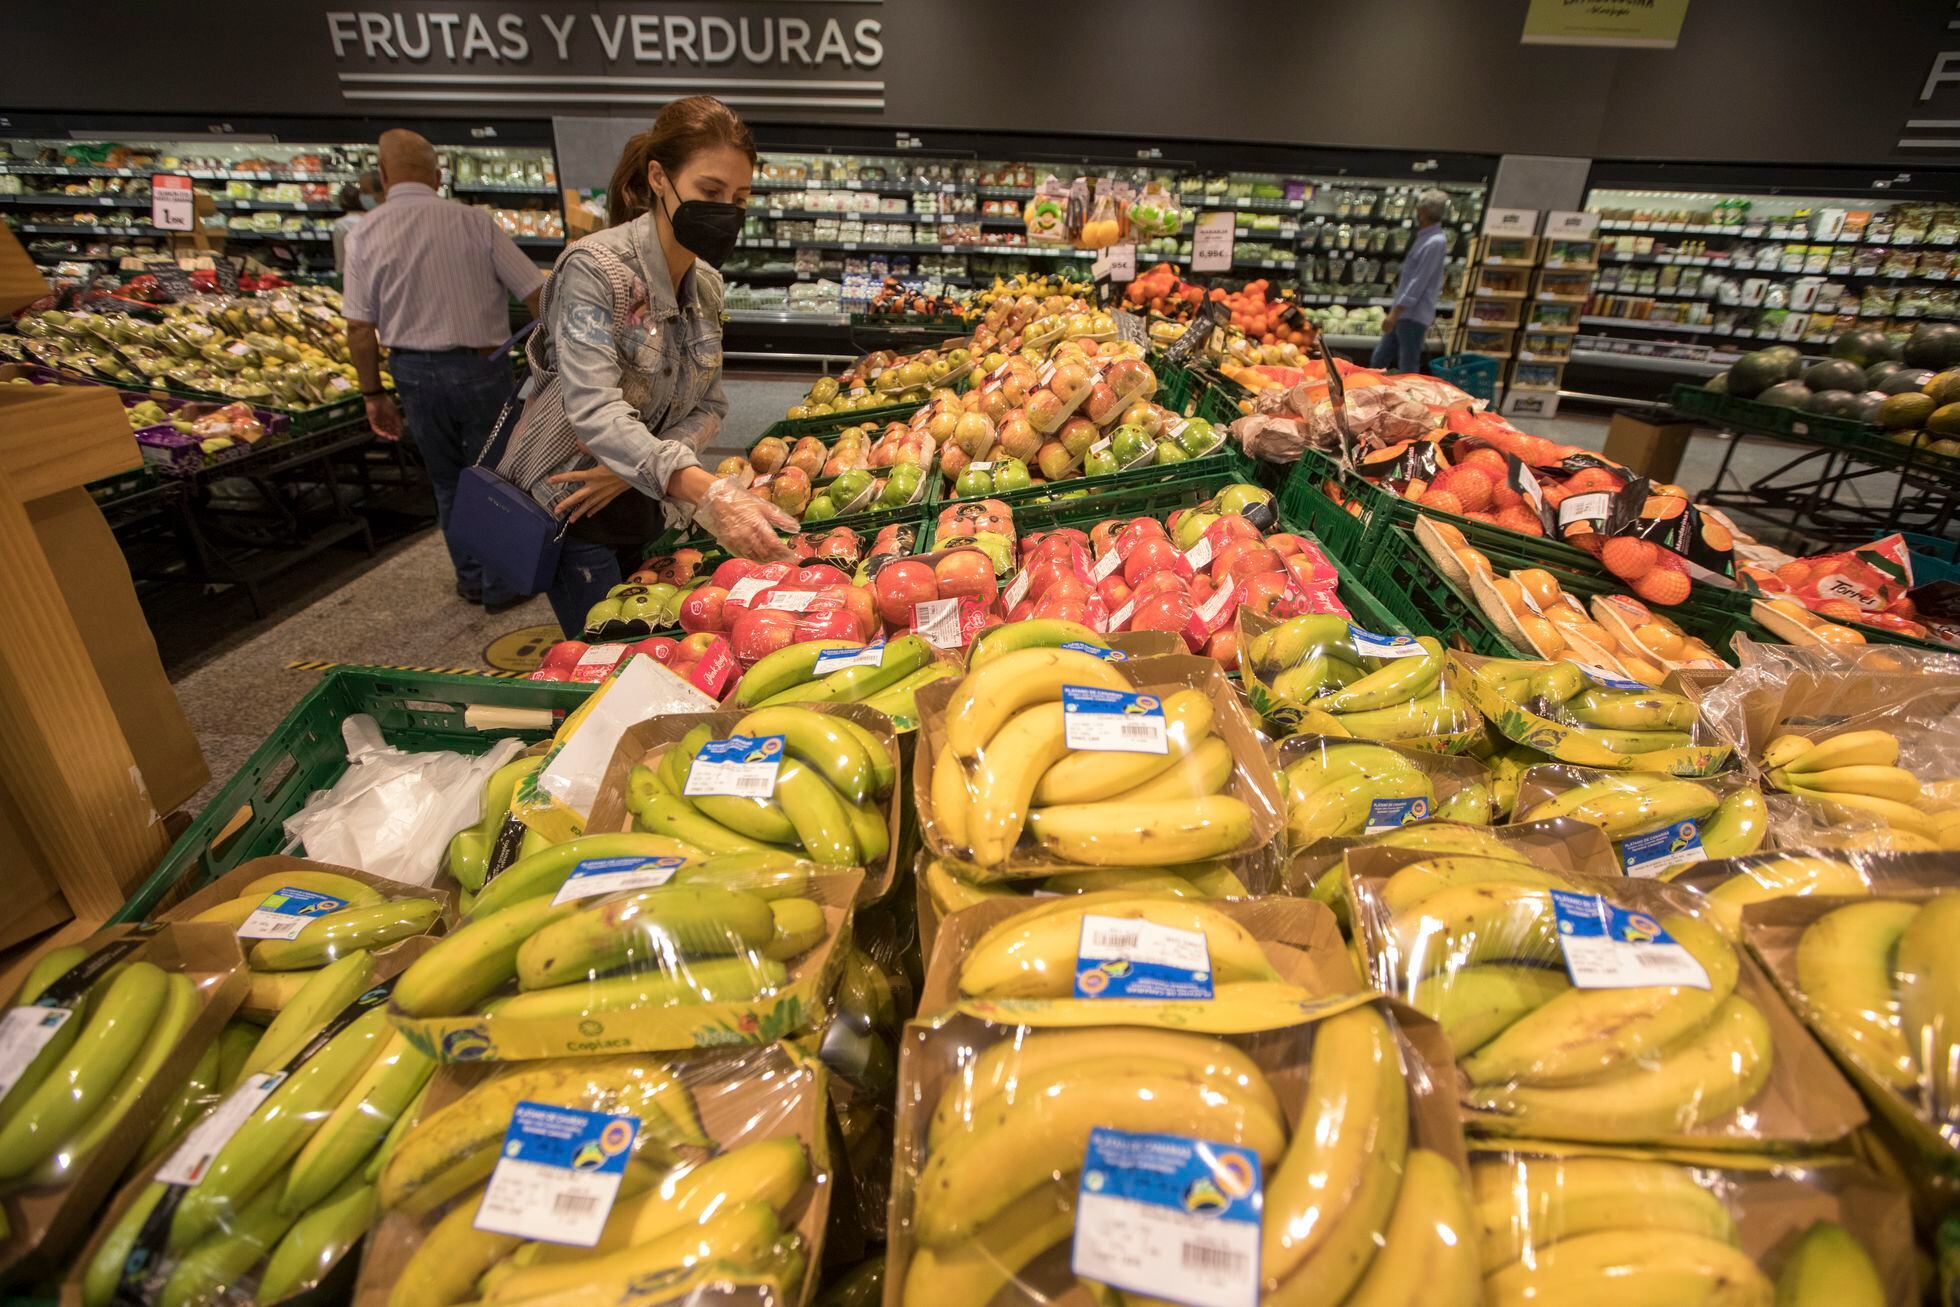 La venta de frutas y verduras en envases de plástico estará prohibida en España en 2023 LSWNTEX5MVF6HKHGPW3E5GMU74